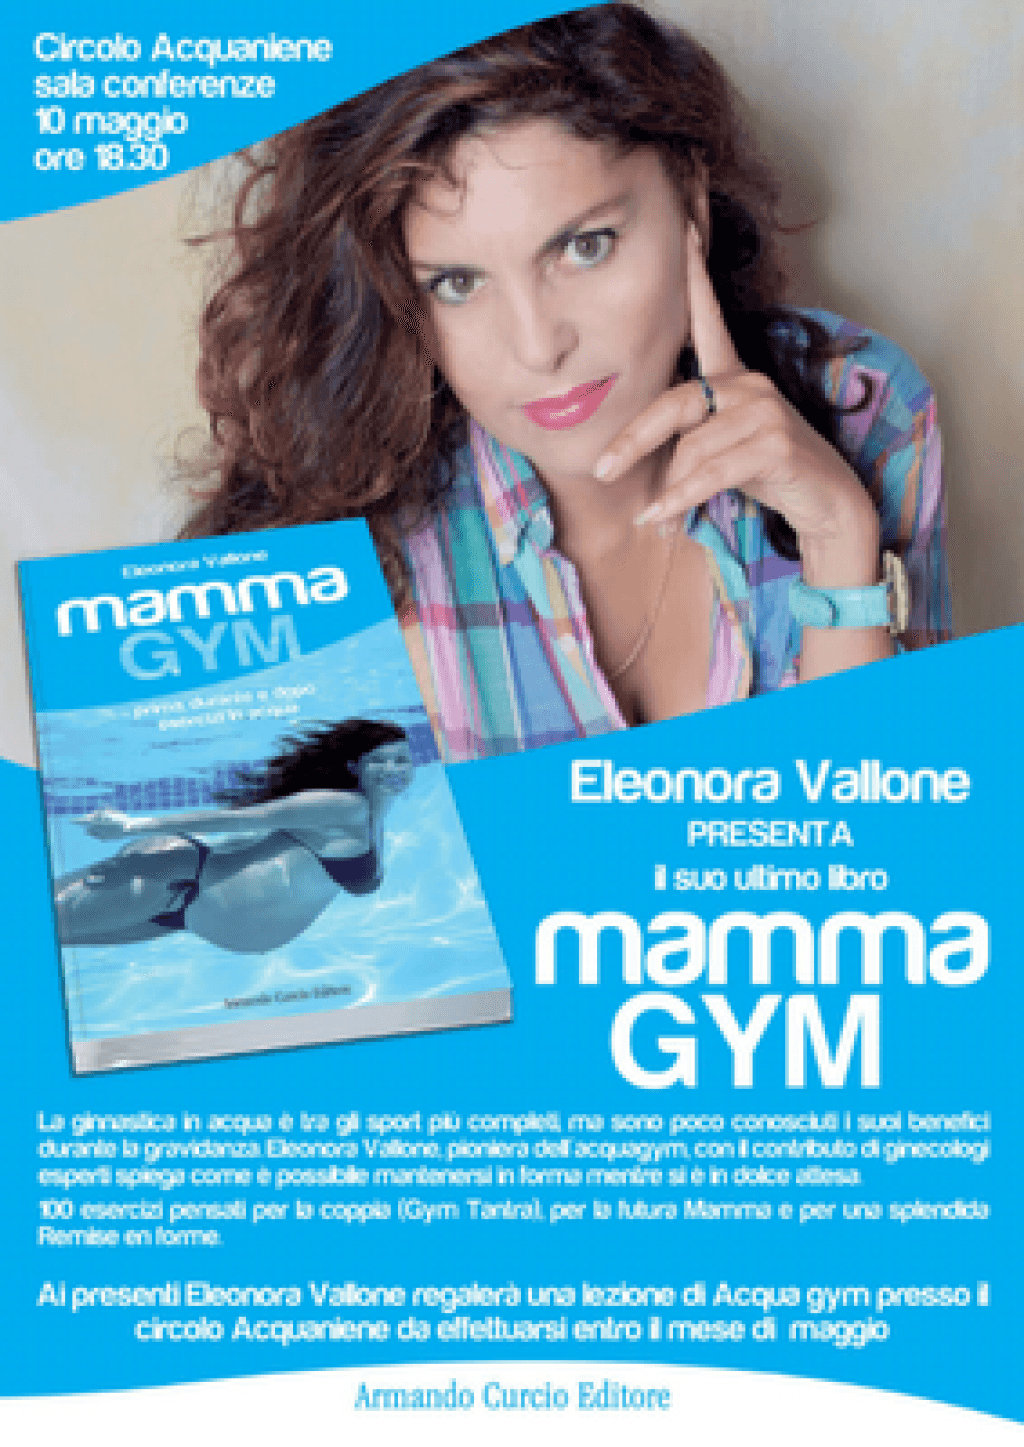 Eleonora Vallone presenta la sua ultima fatica "Mamma Gym"